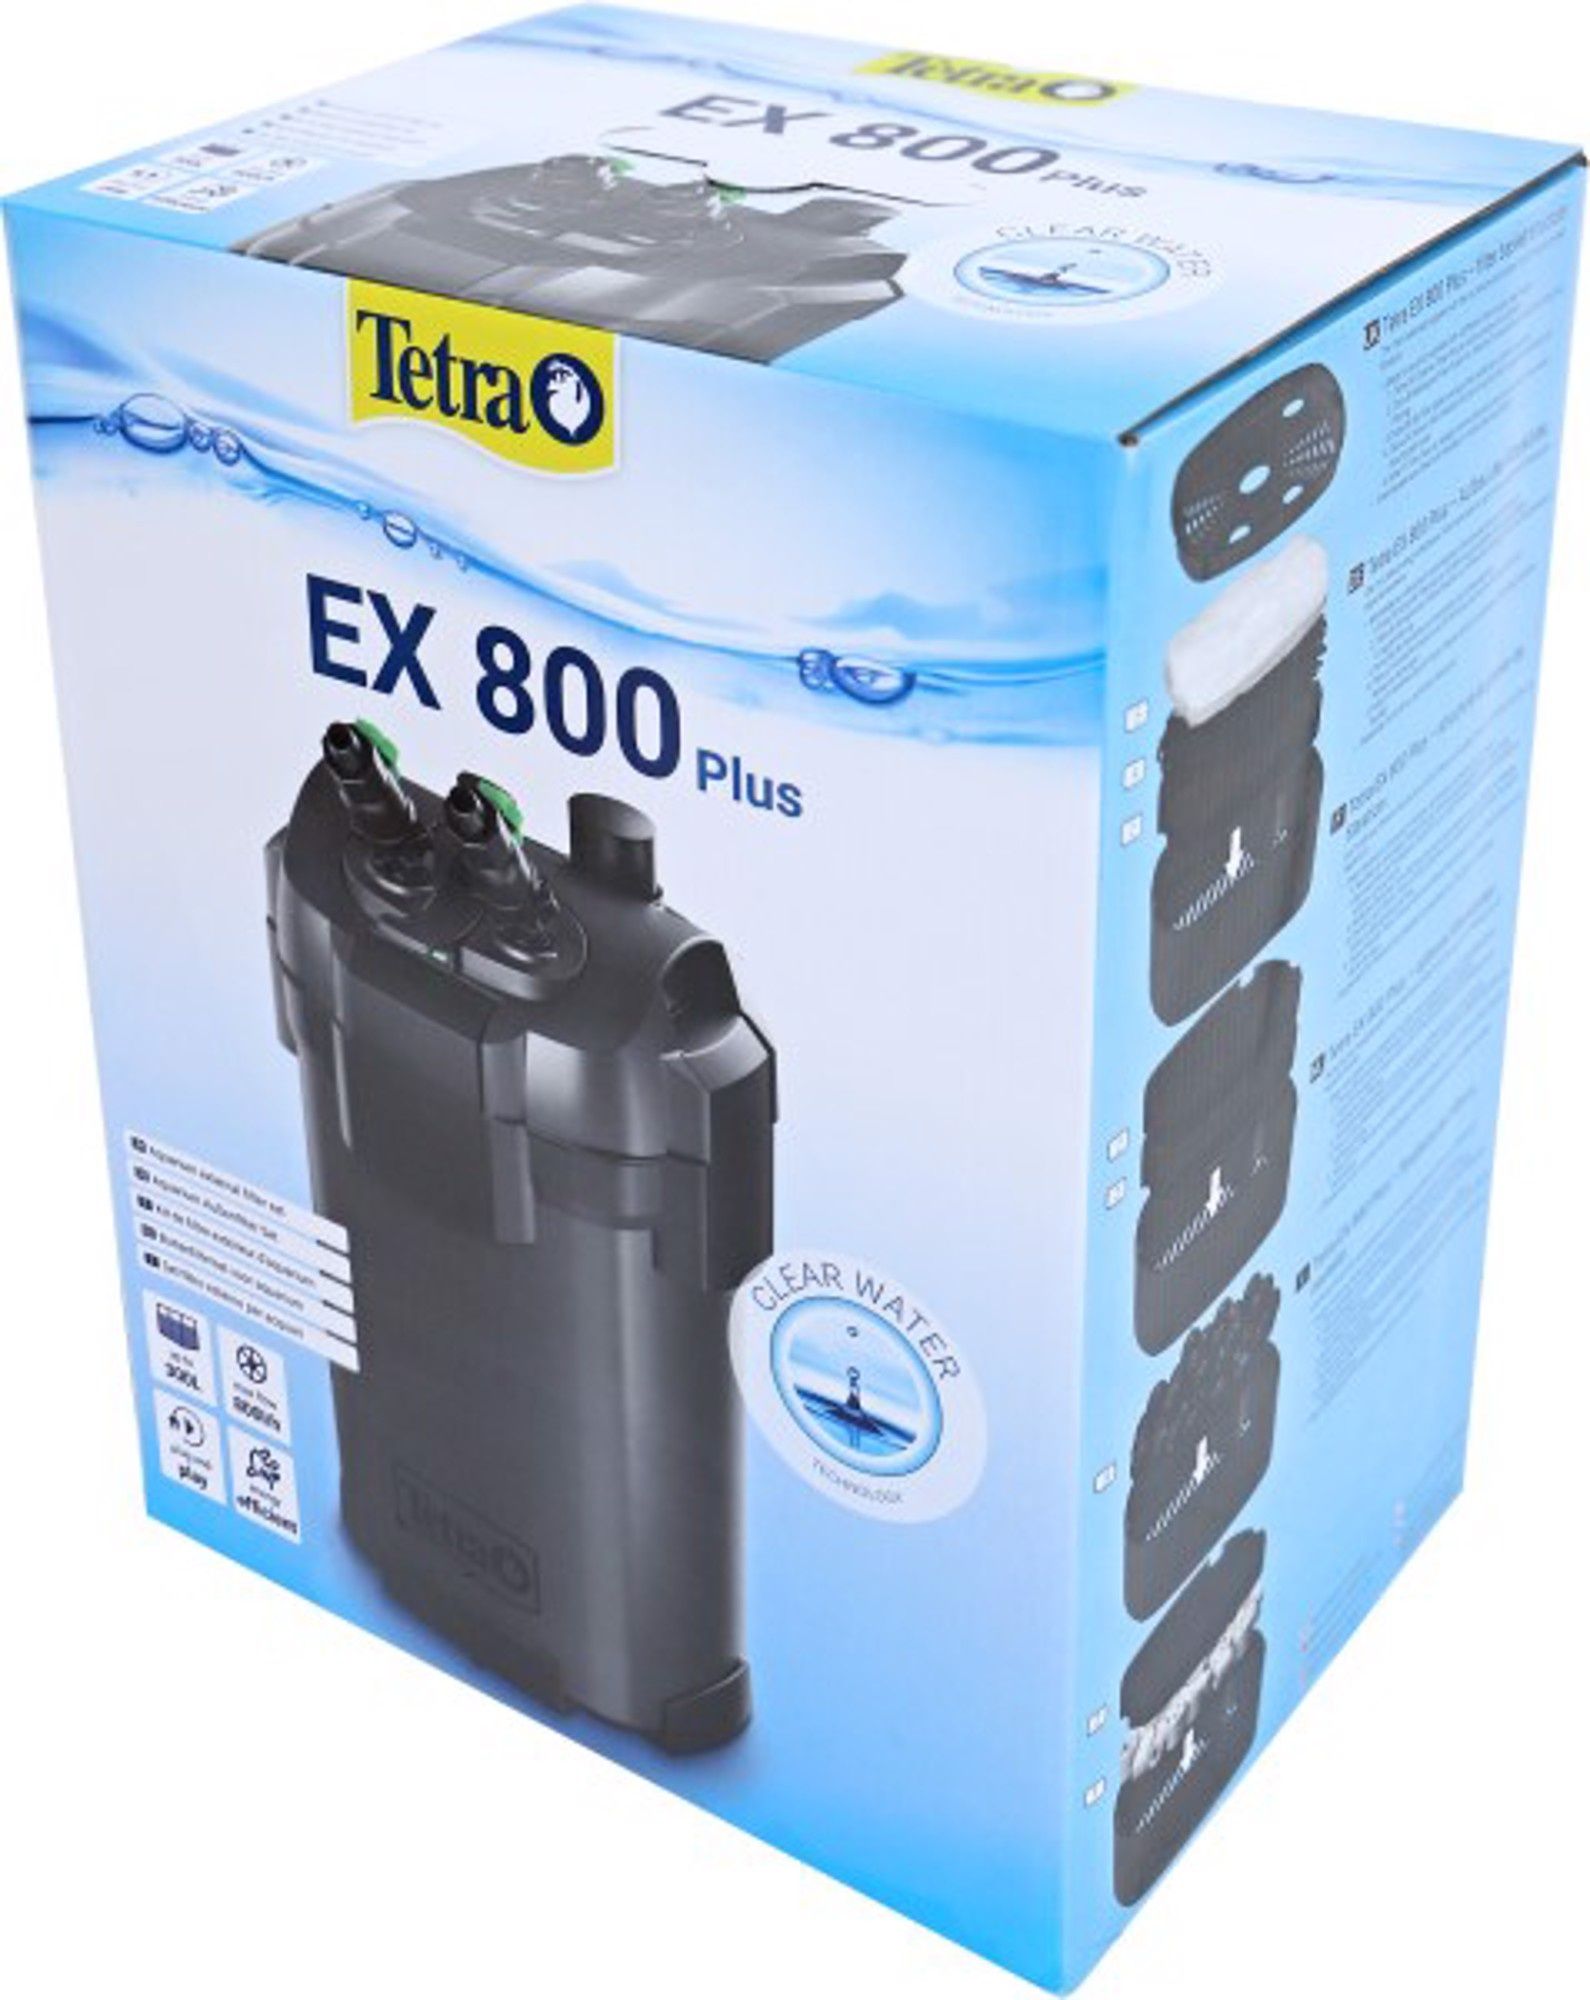 Vand un filtru Tetra EX 800 Plus în perfectă stare de funcționare